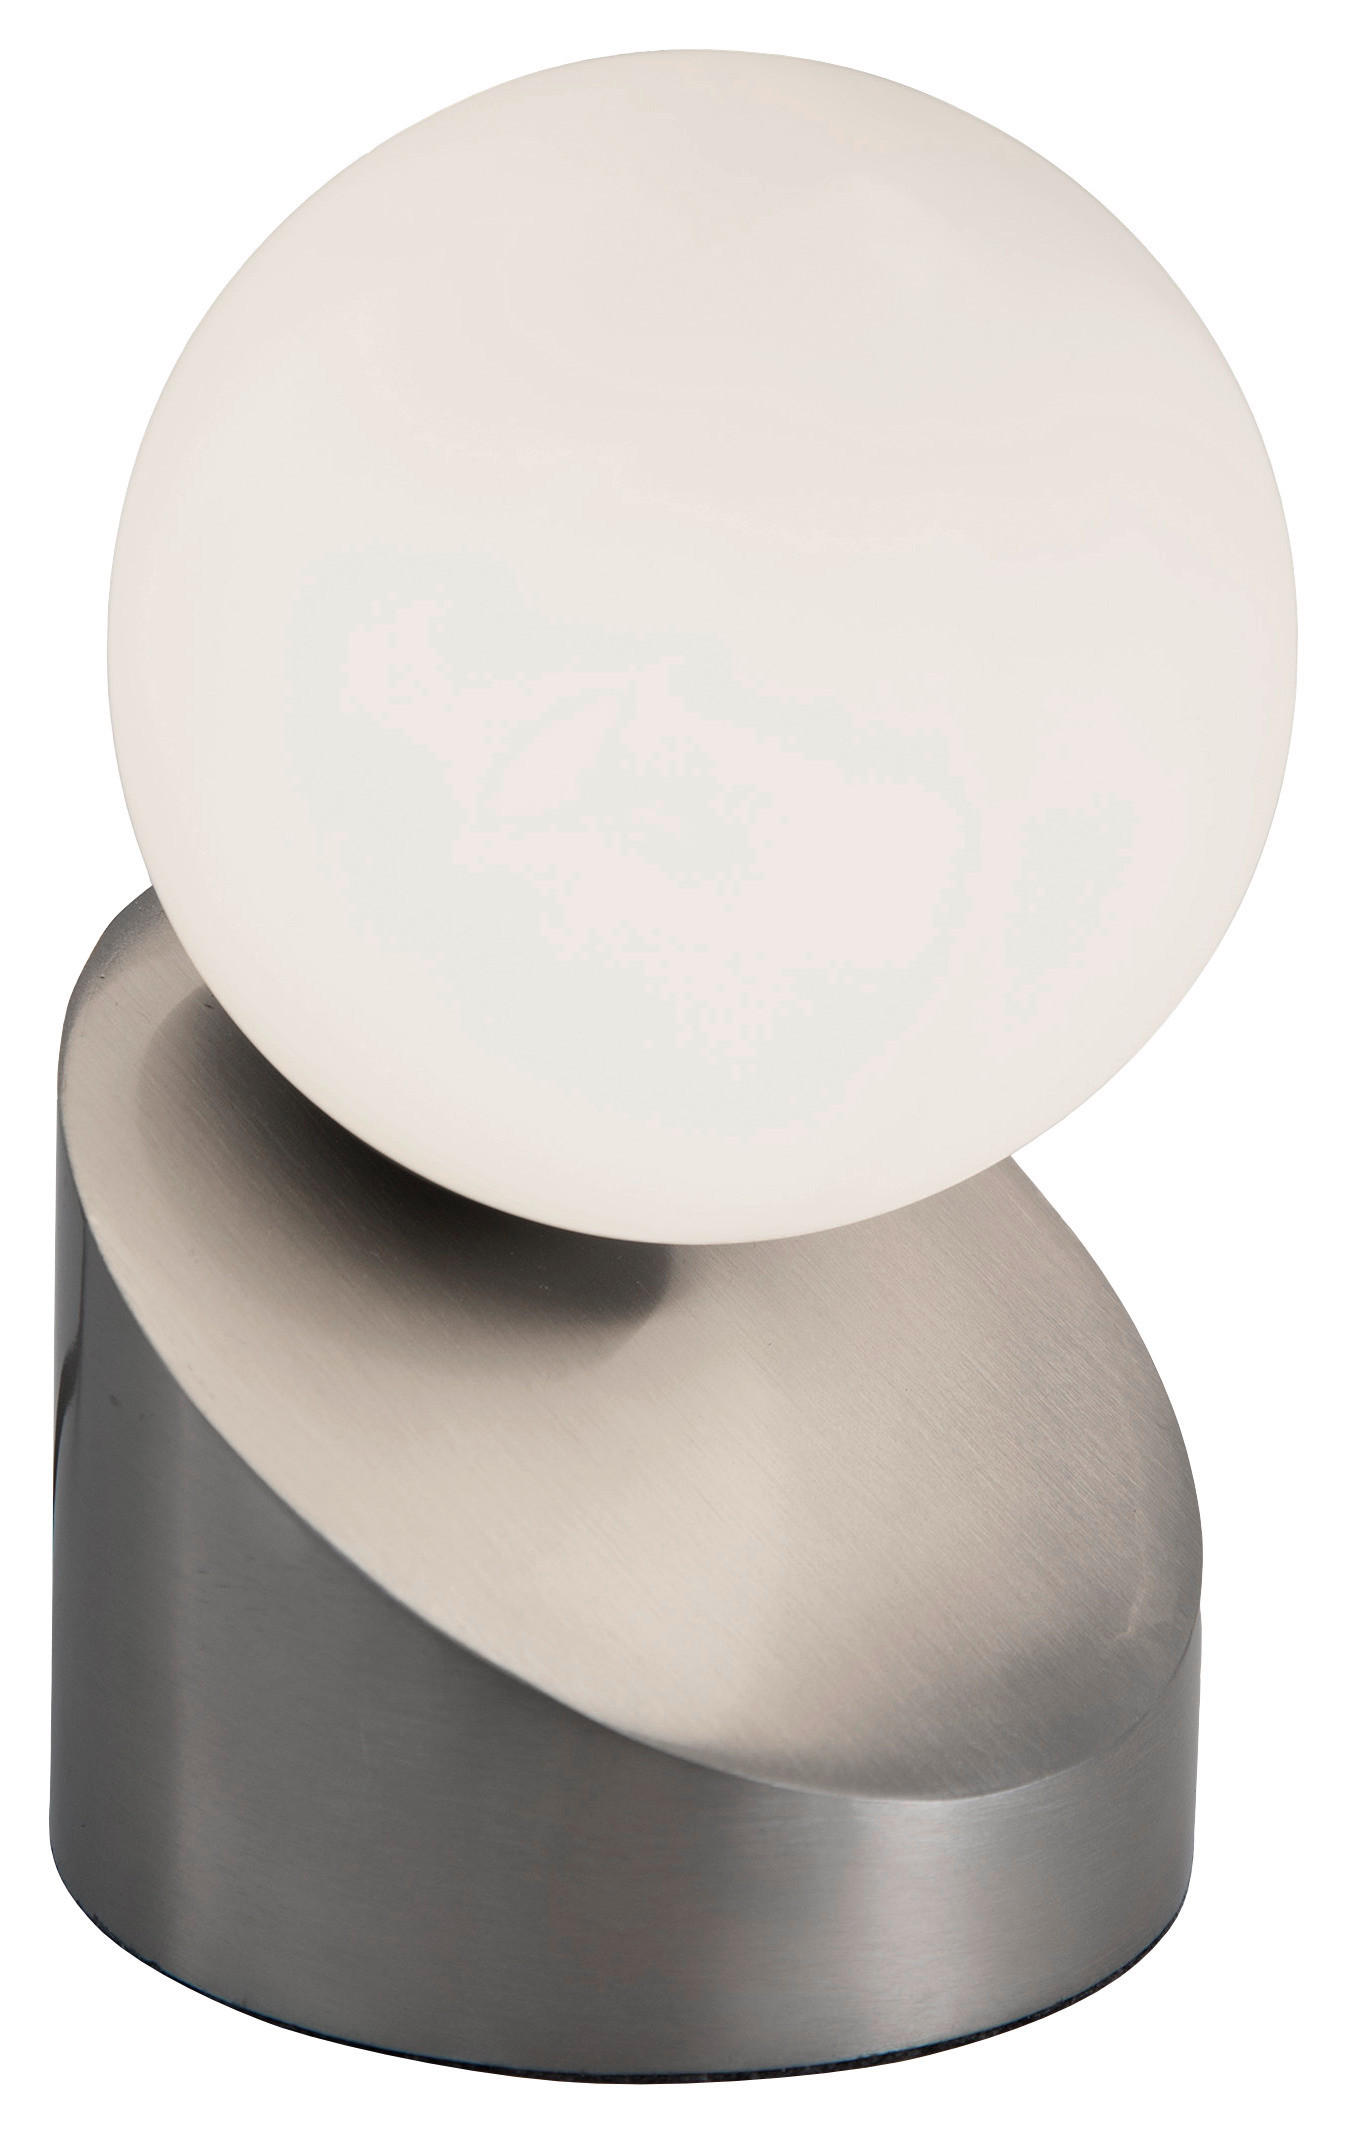 LED-TISCHLEUCHTE - weiss/Nickelfarben, Design, Glas/Metall (16cm) - Xora